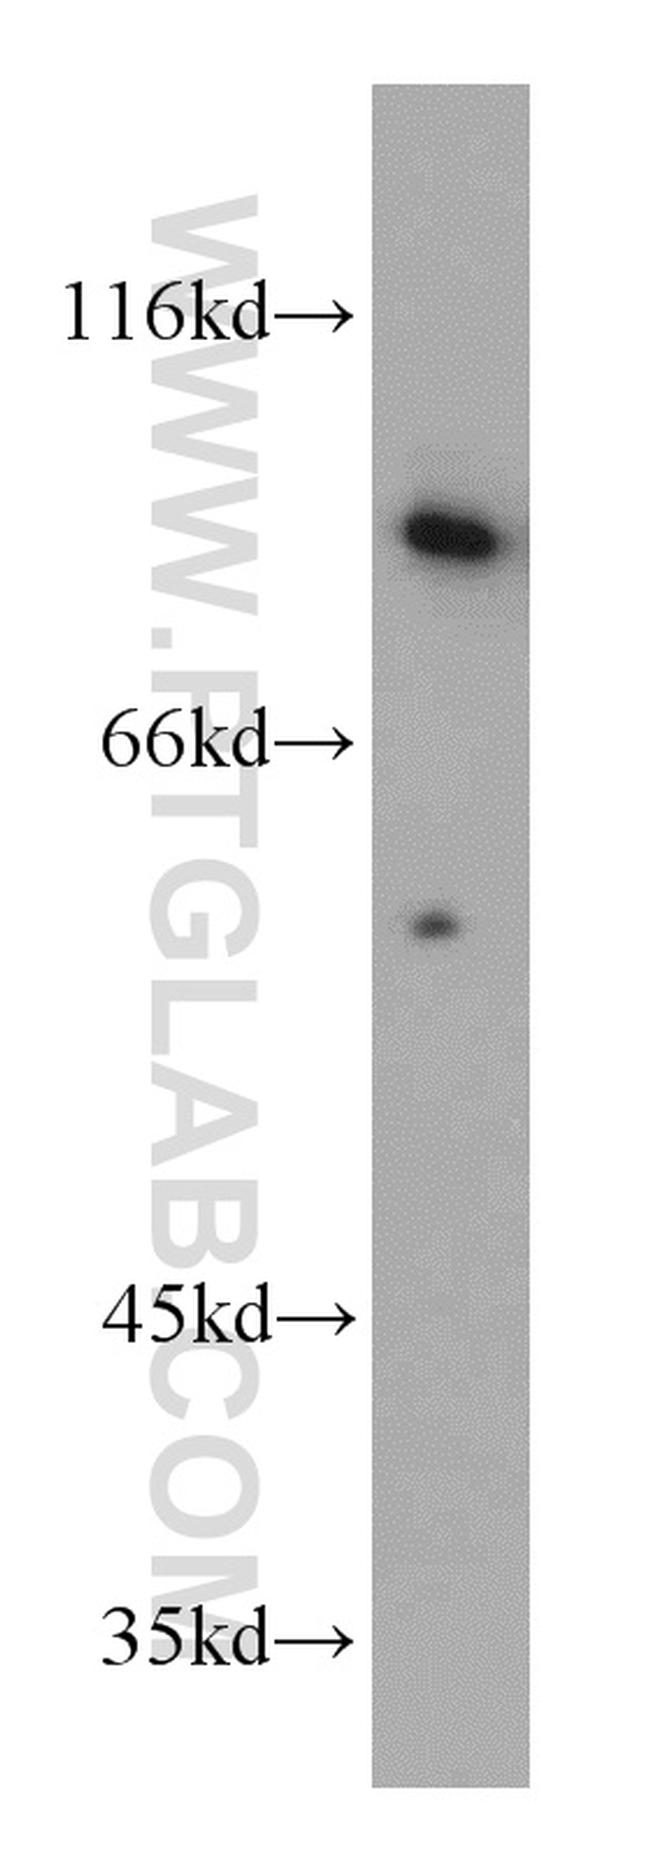 ERCC3 Antibody in Western Blot (WB)